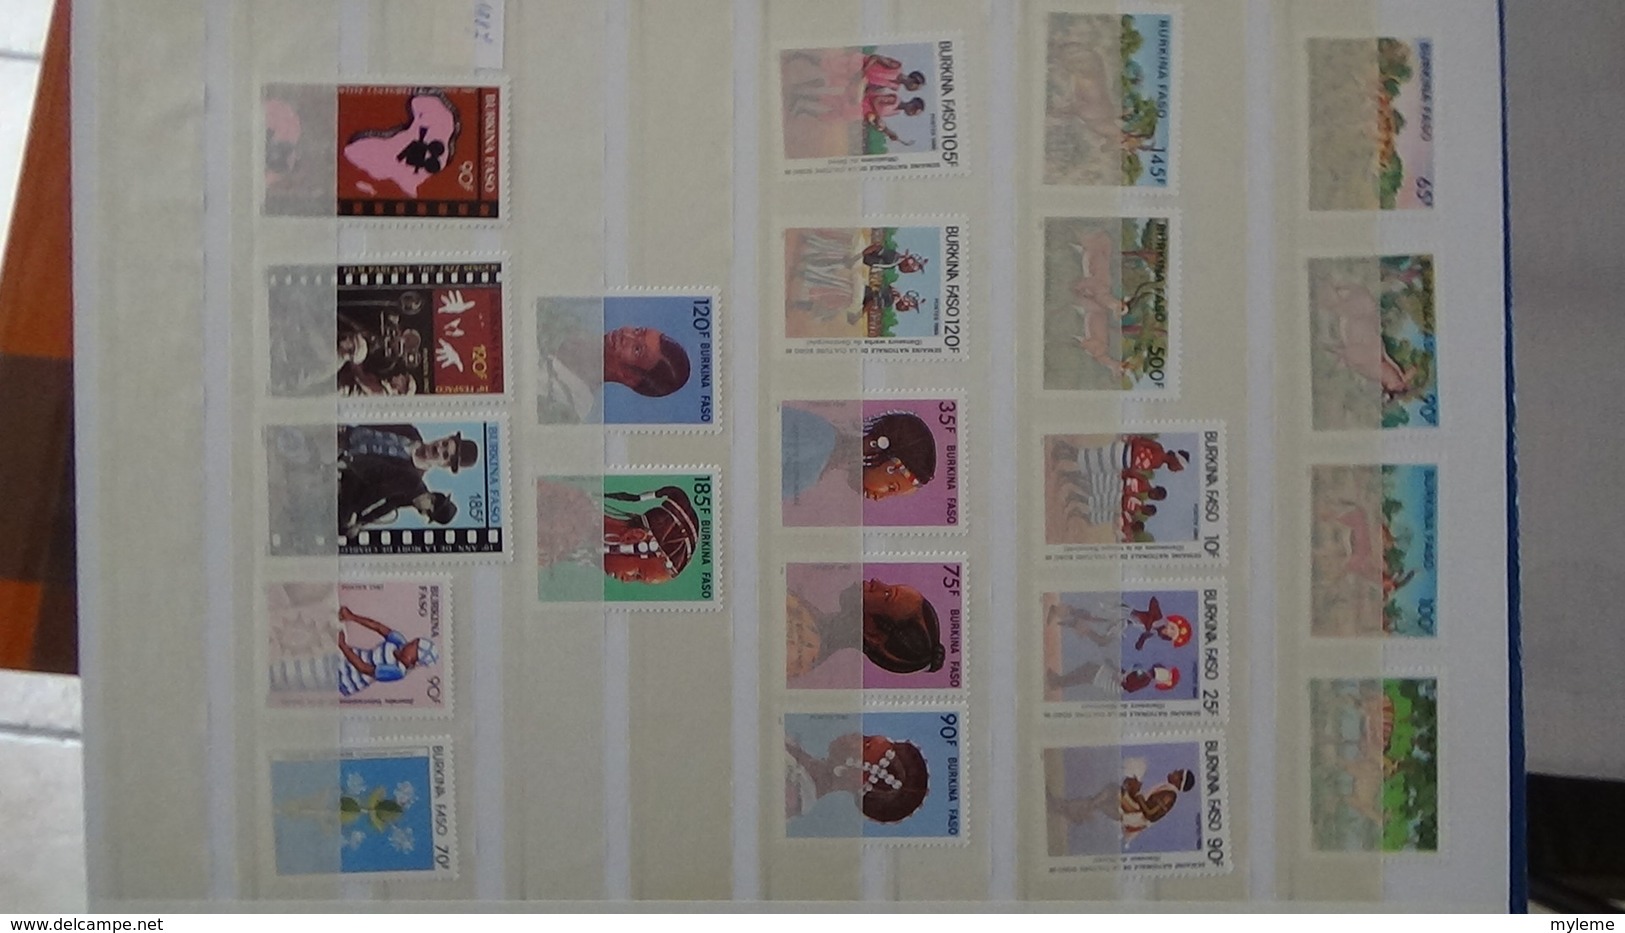 C91 Très belle collection timbres et blocs ** d'Algérie, Bénion et Burkina Fasso dont bonnes petites valeurs !!!